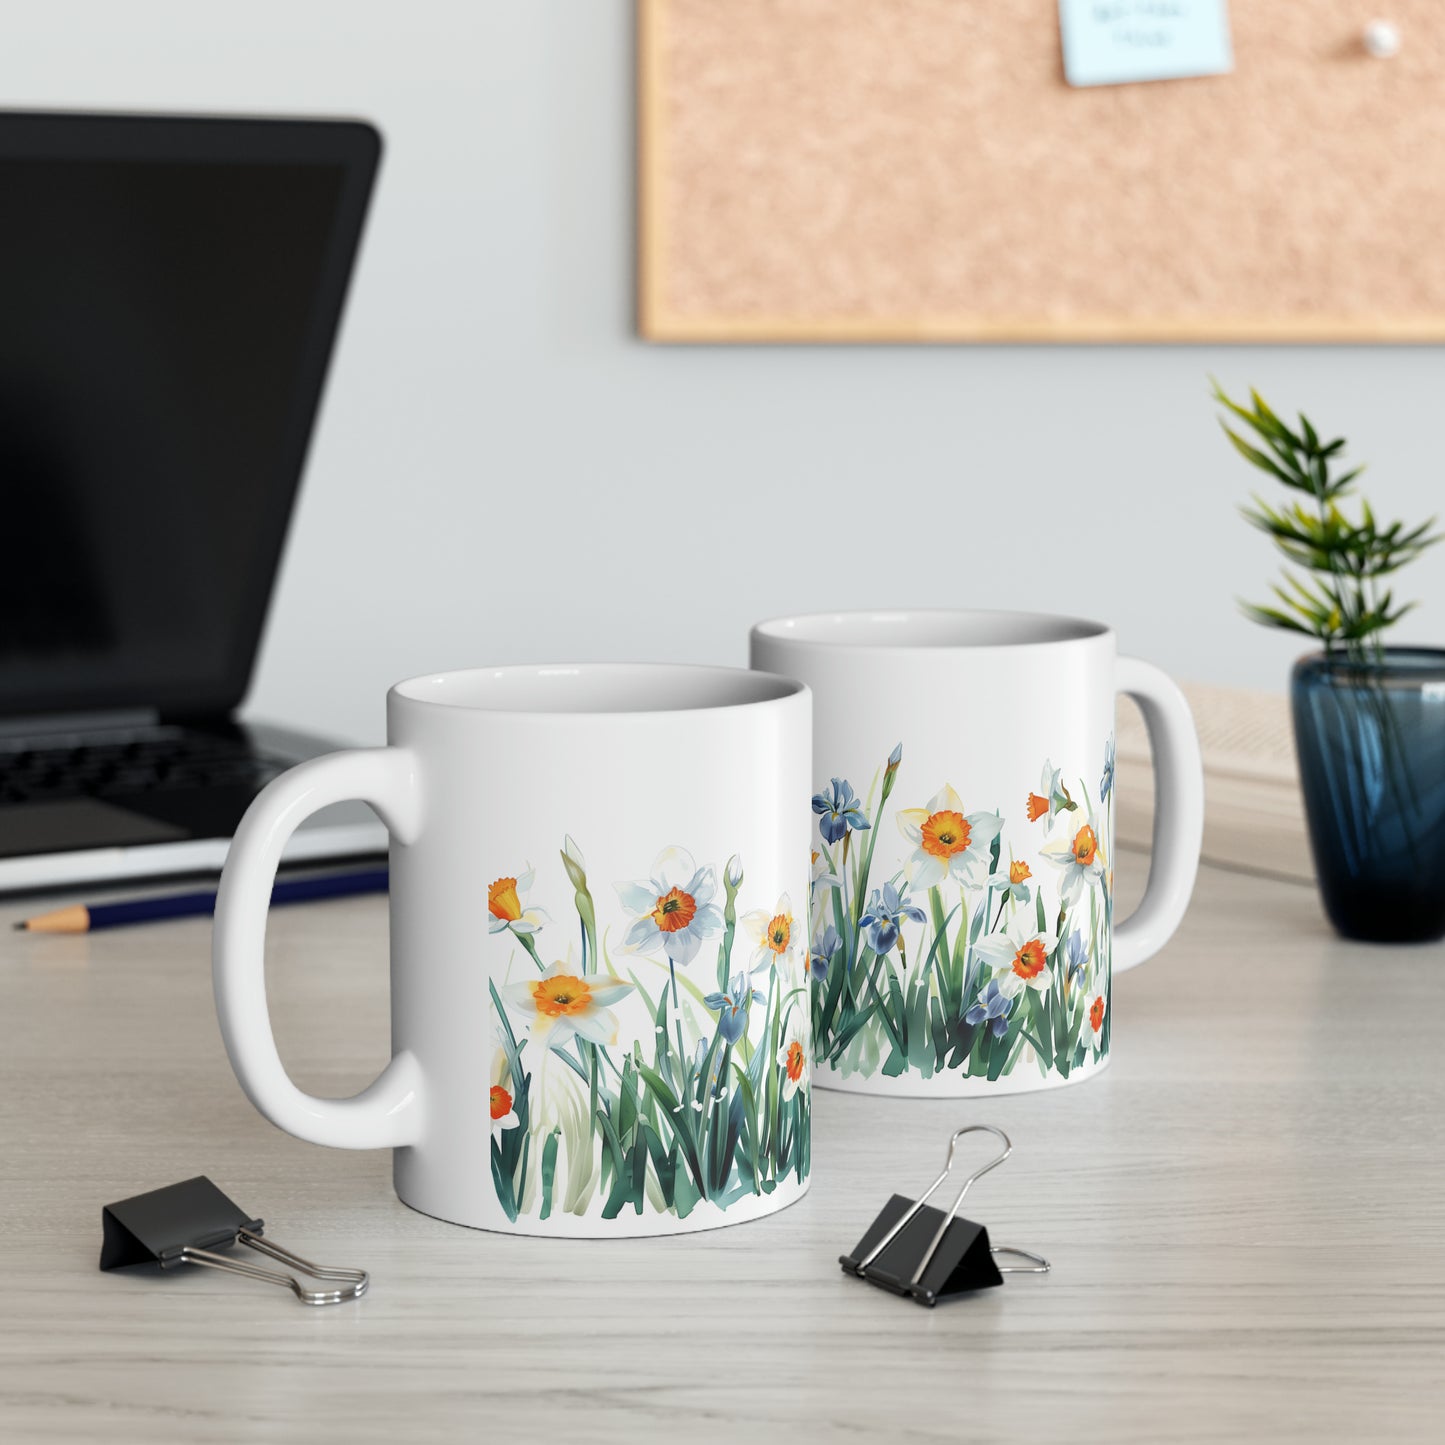 Daffodils and Irises, Ceramic Mug - 11 oz, Watercolor